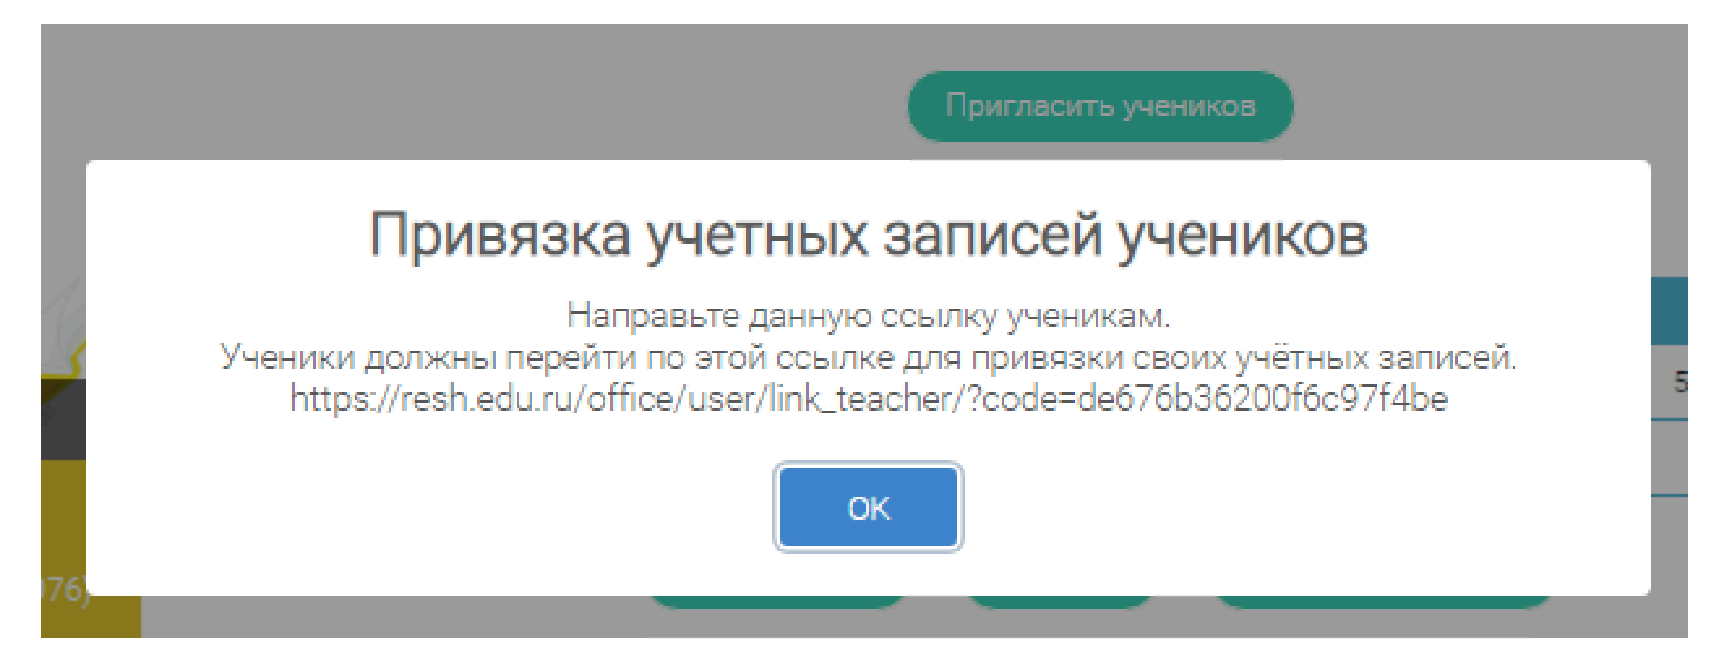 Как найти учителей в российской электронной школе